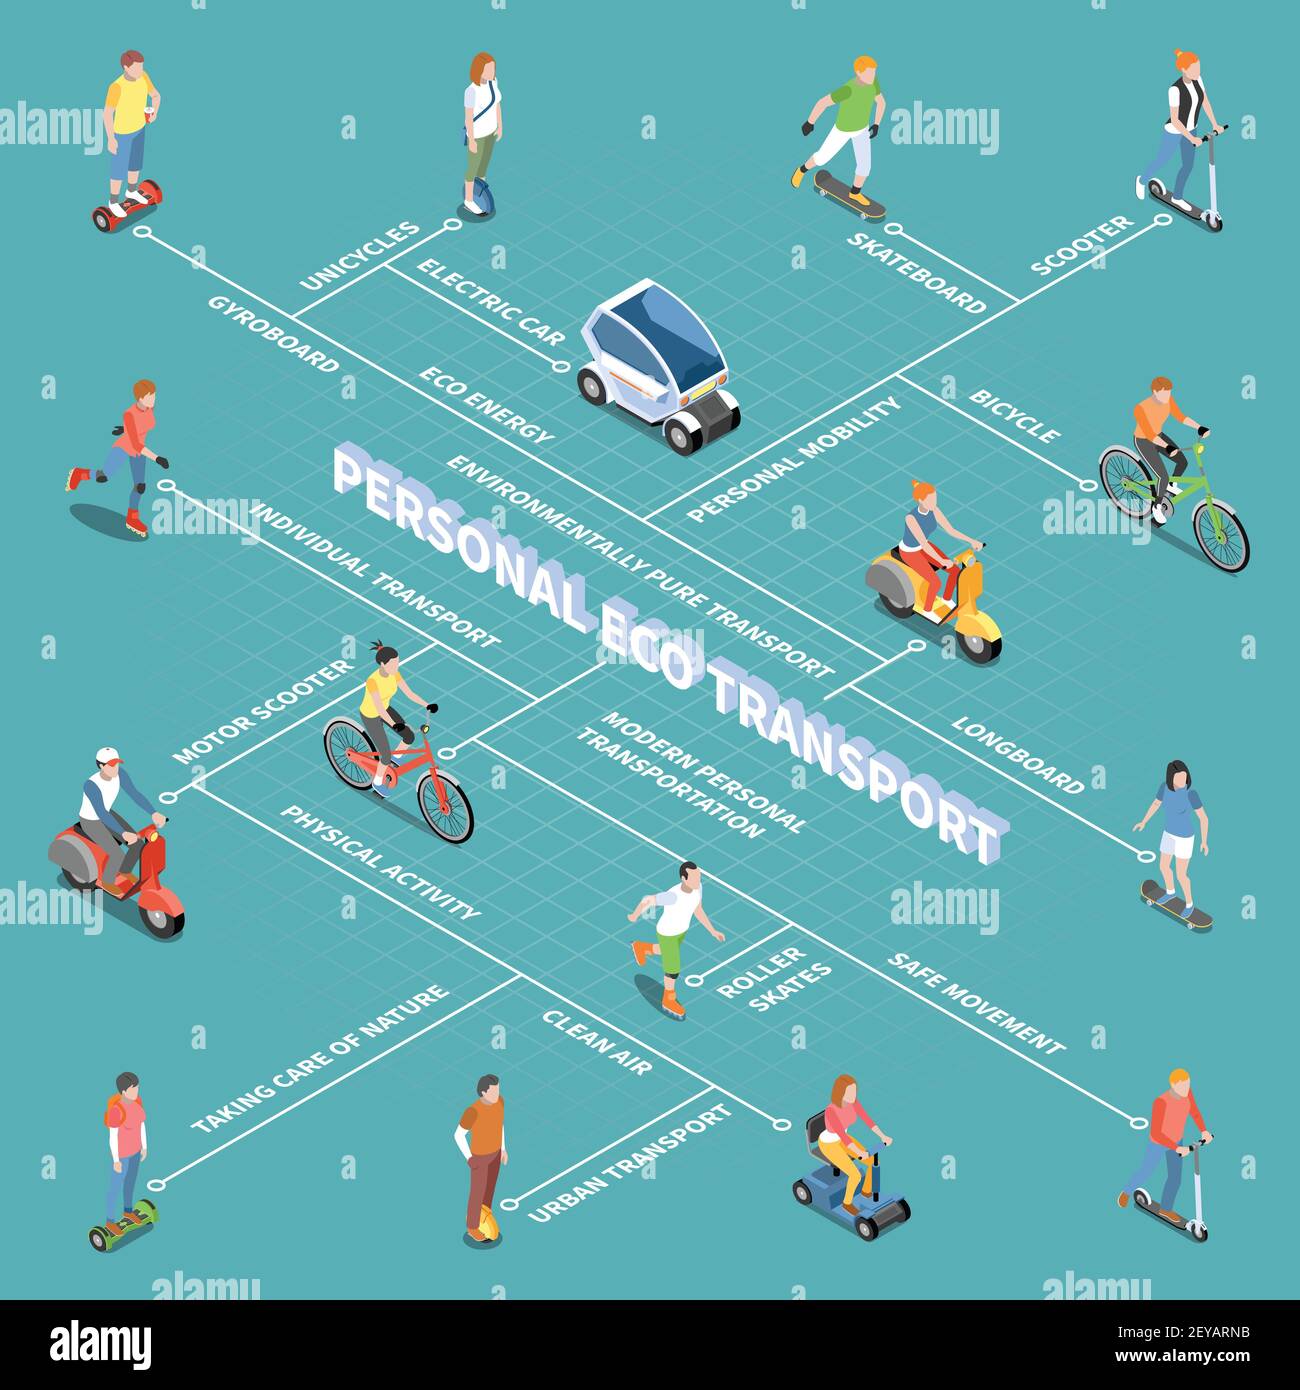 Diagrama De Flujo De Transporte Ecológico Personal Con Símbolos De Movilidad Personal Vector 3665